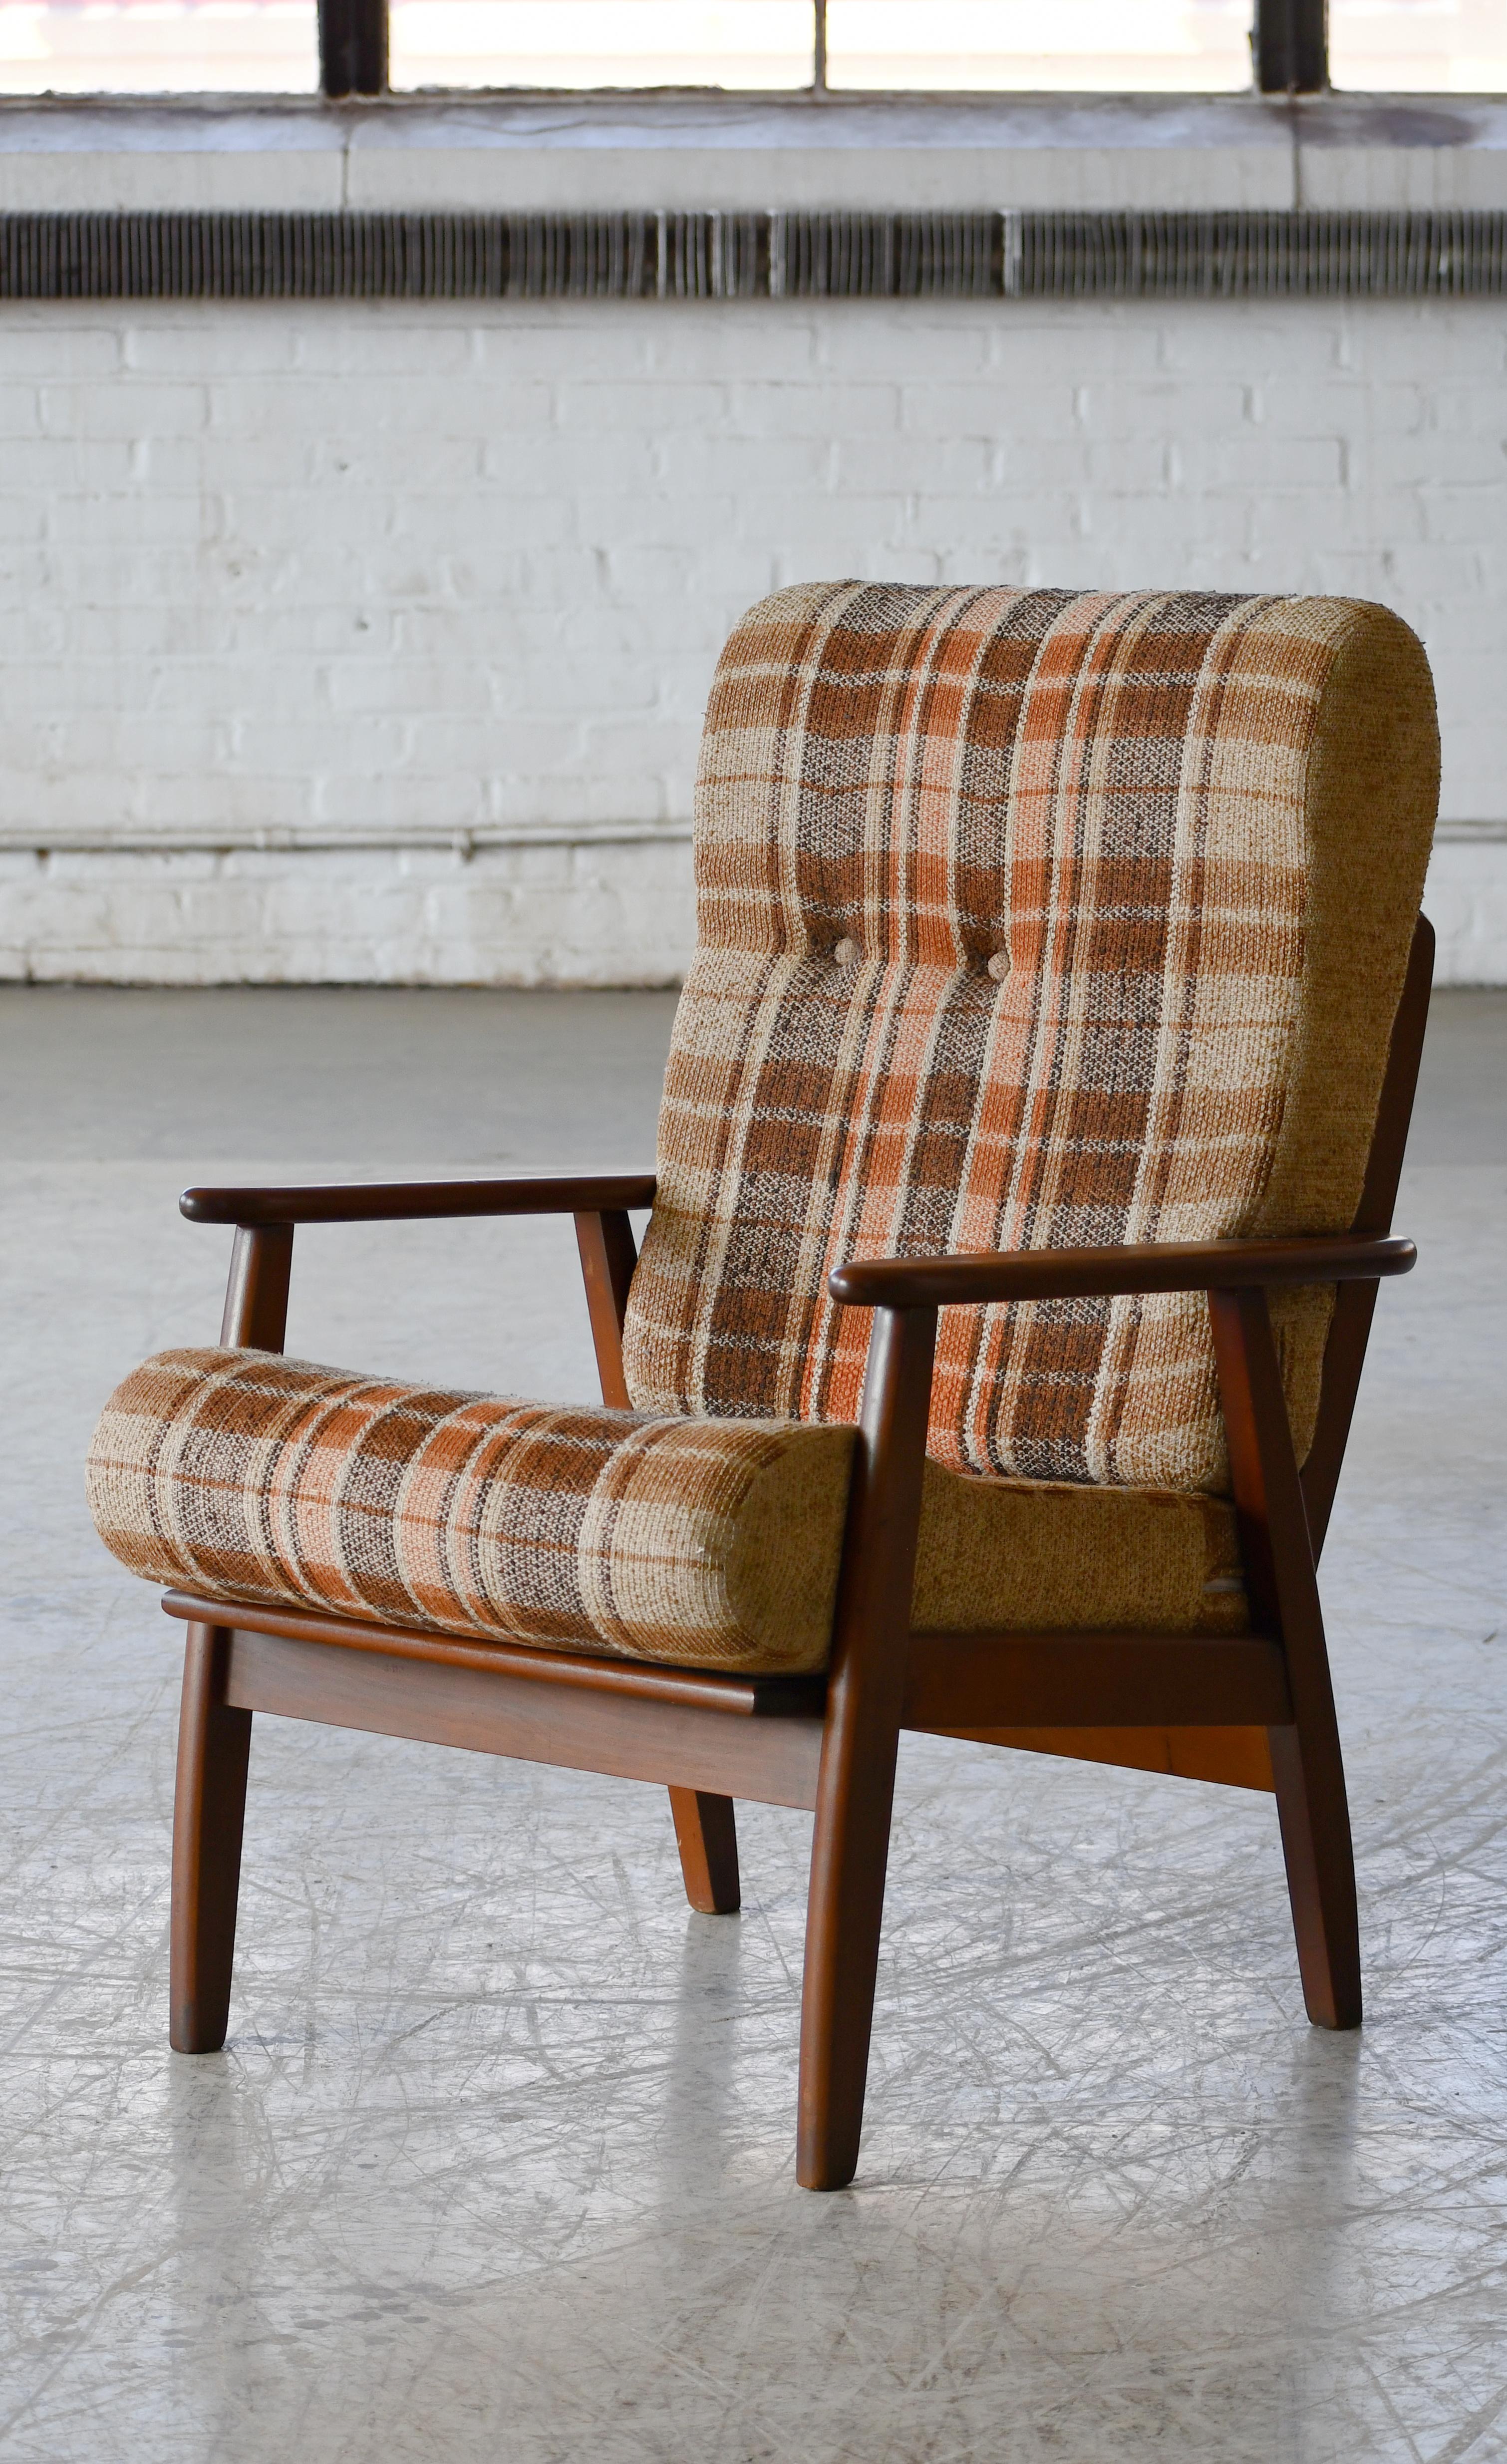 Wirklich schöner Sessel aus den 1960er Jahren, sehr typisch für die Entwürfe dieser Zeit wie Arne Vodder und Hans Wegner. Das Gestell ist in die Sitzfläche integriert und aus massivem Teakholz gefertigt. Der Stuhl ist solide und stabil, aber dennoch